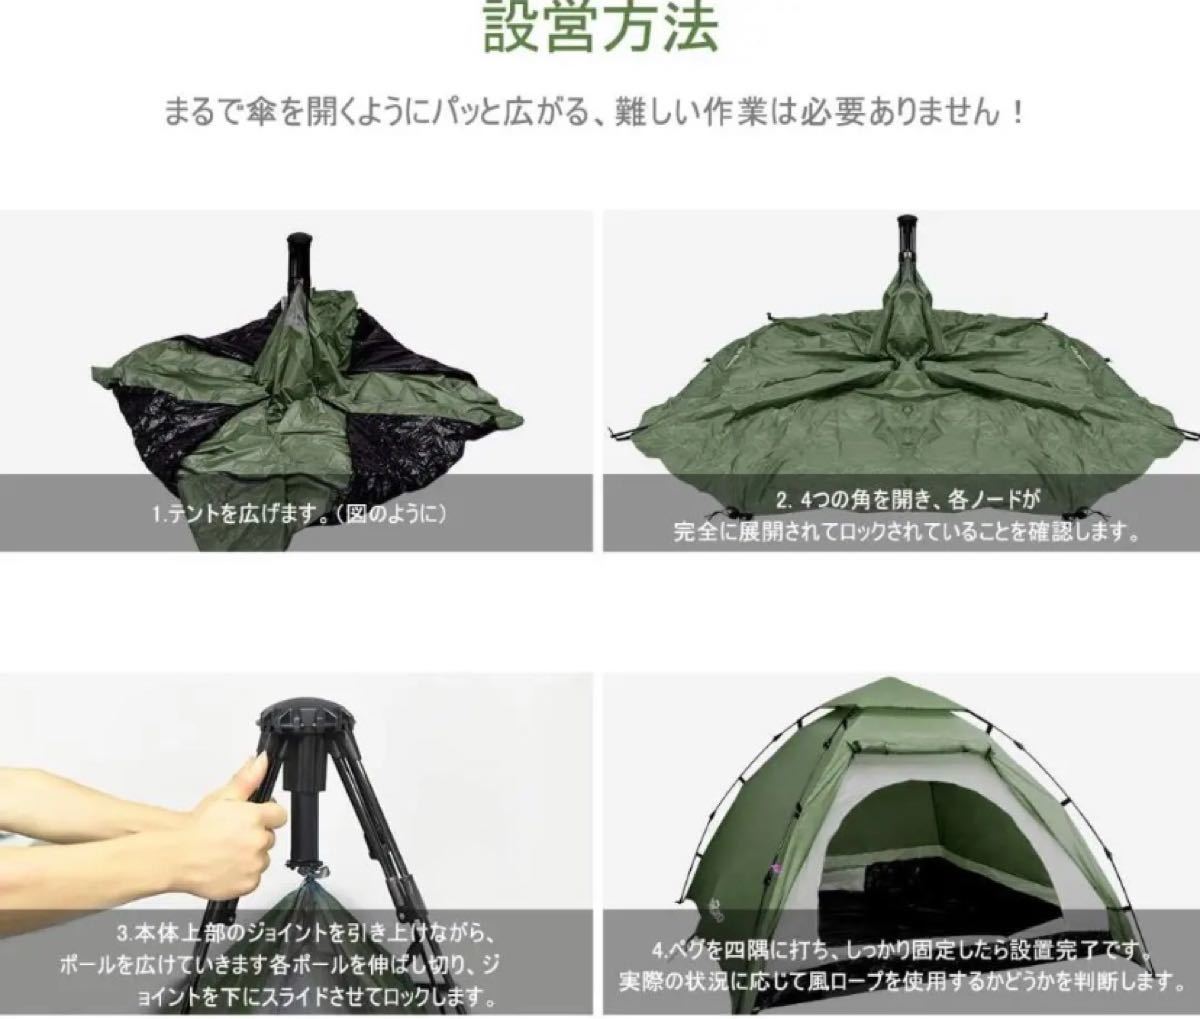 IREGRO キャンプテント ワンタッチ式 2~3人用 サンシェードテント